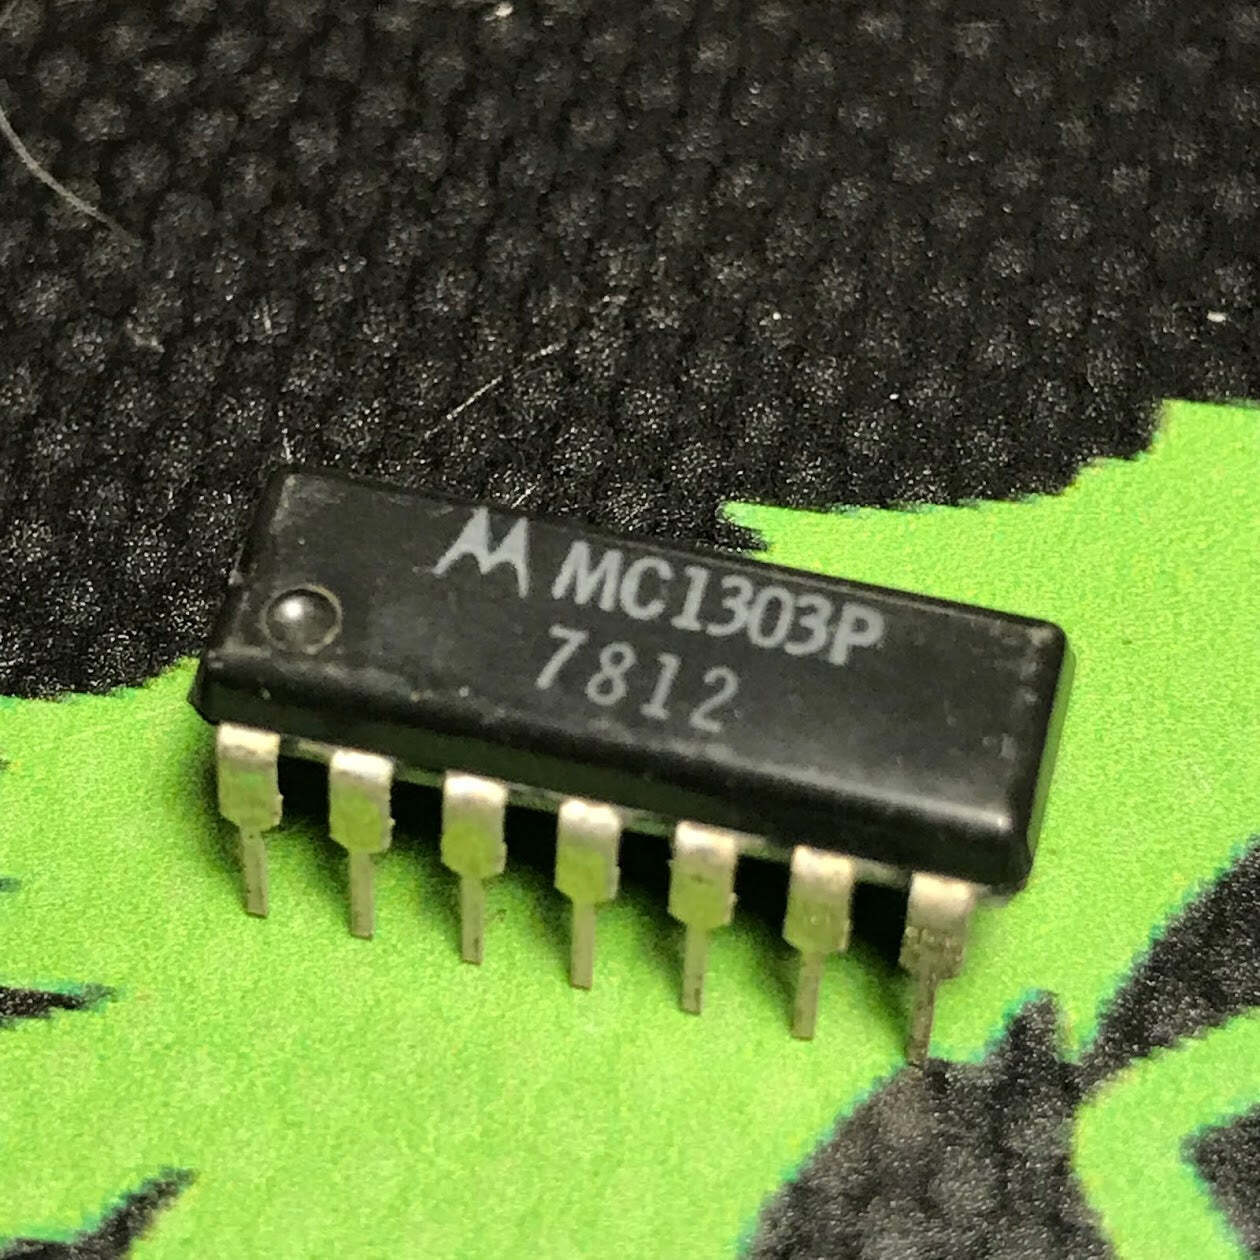 MC1303P - MOTOROLA - IN OUR STOCK